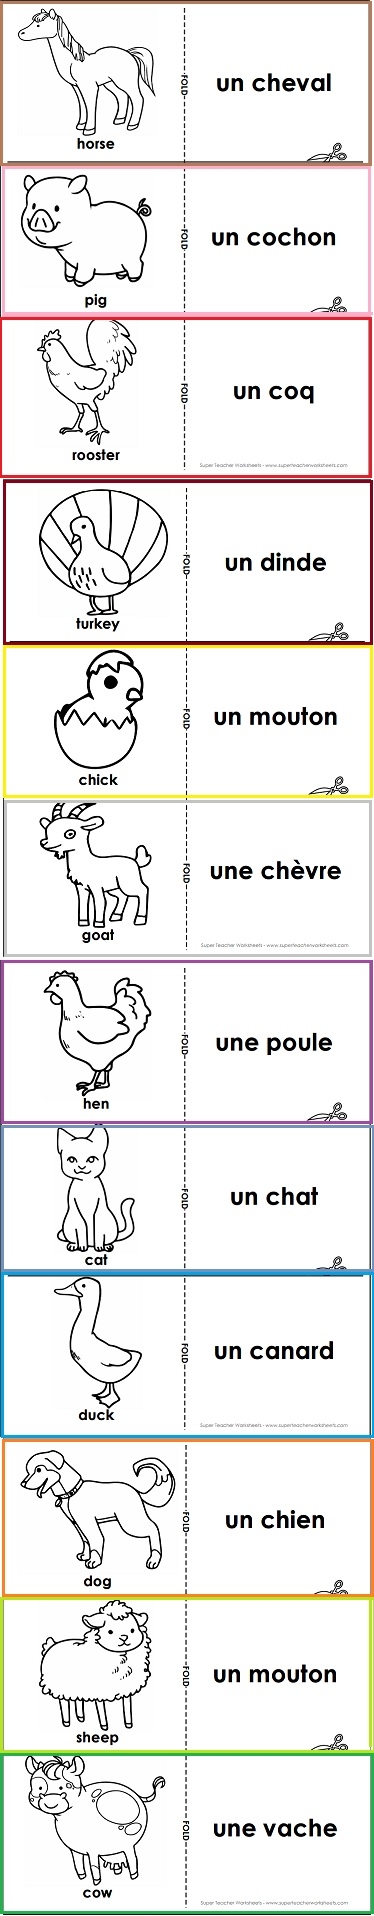 French Flash Cards - Farm Animals